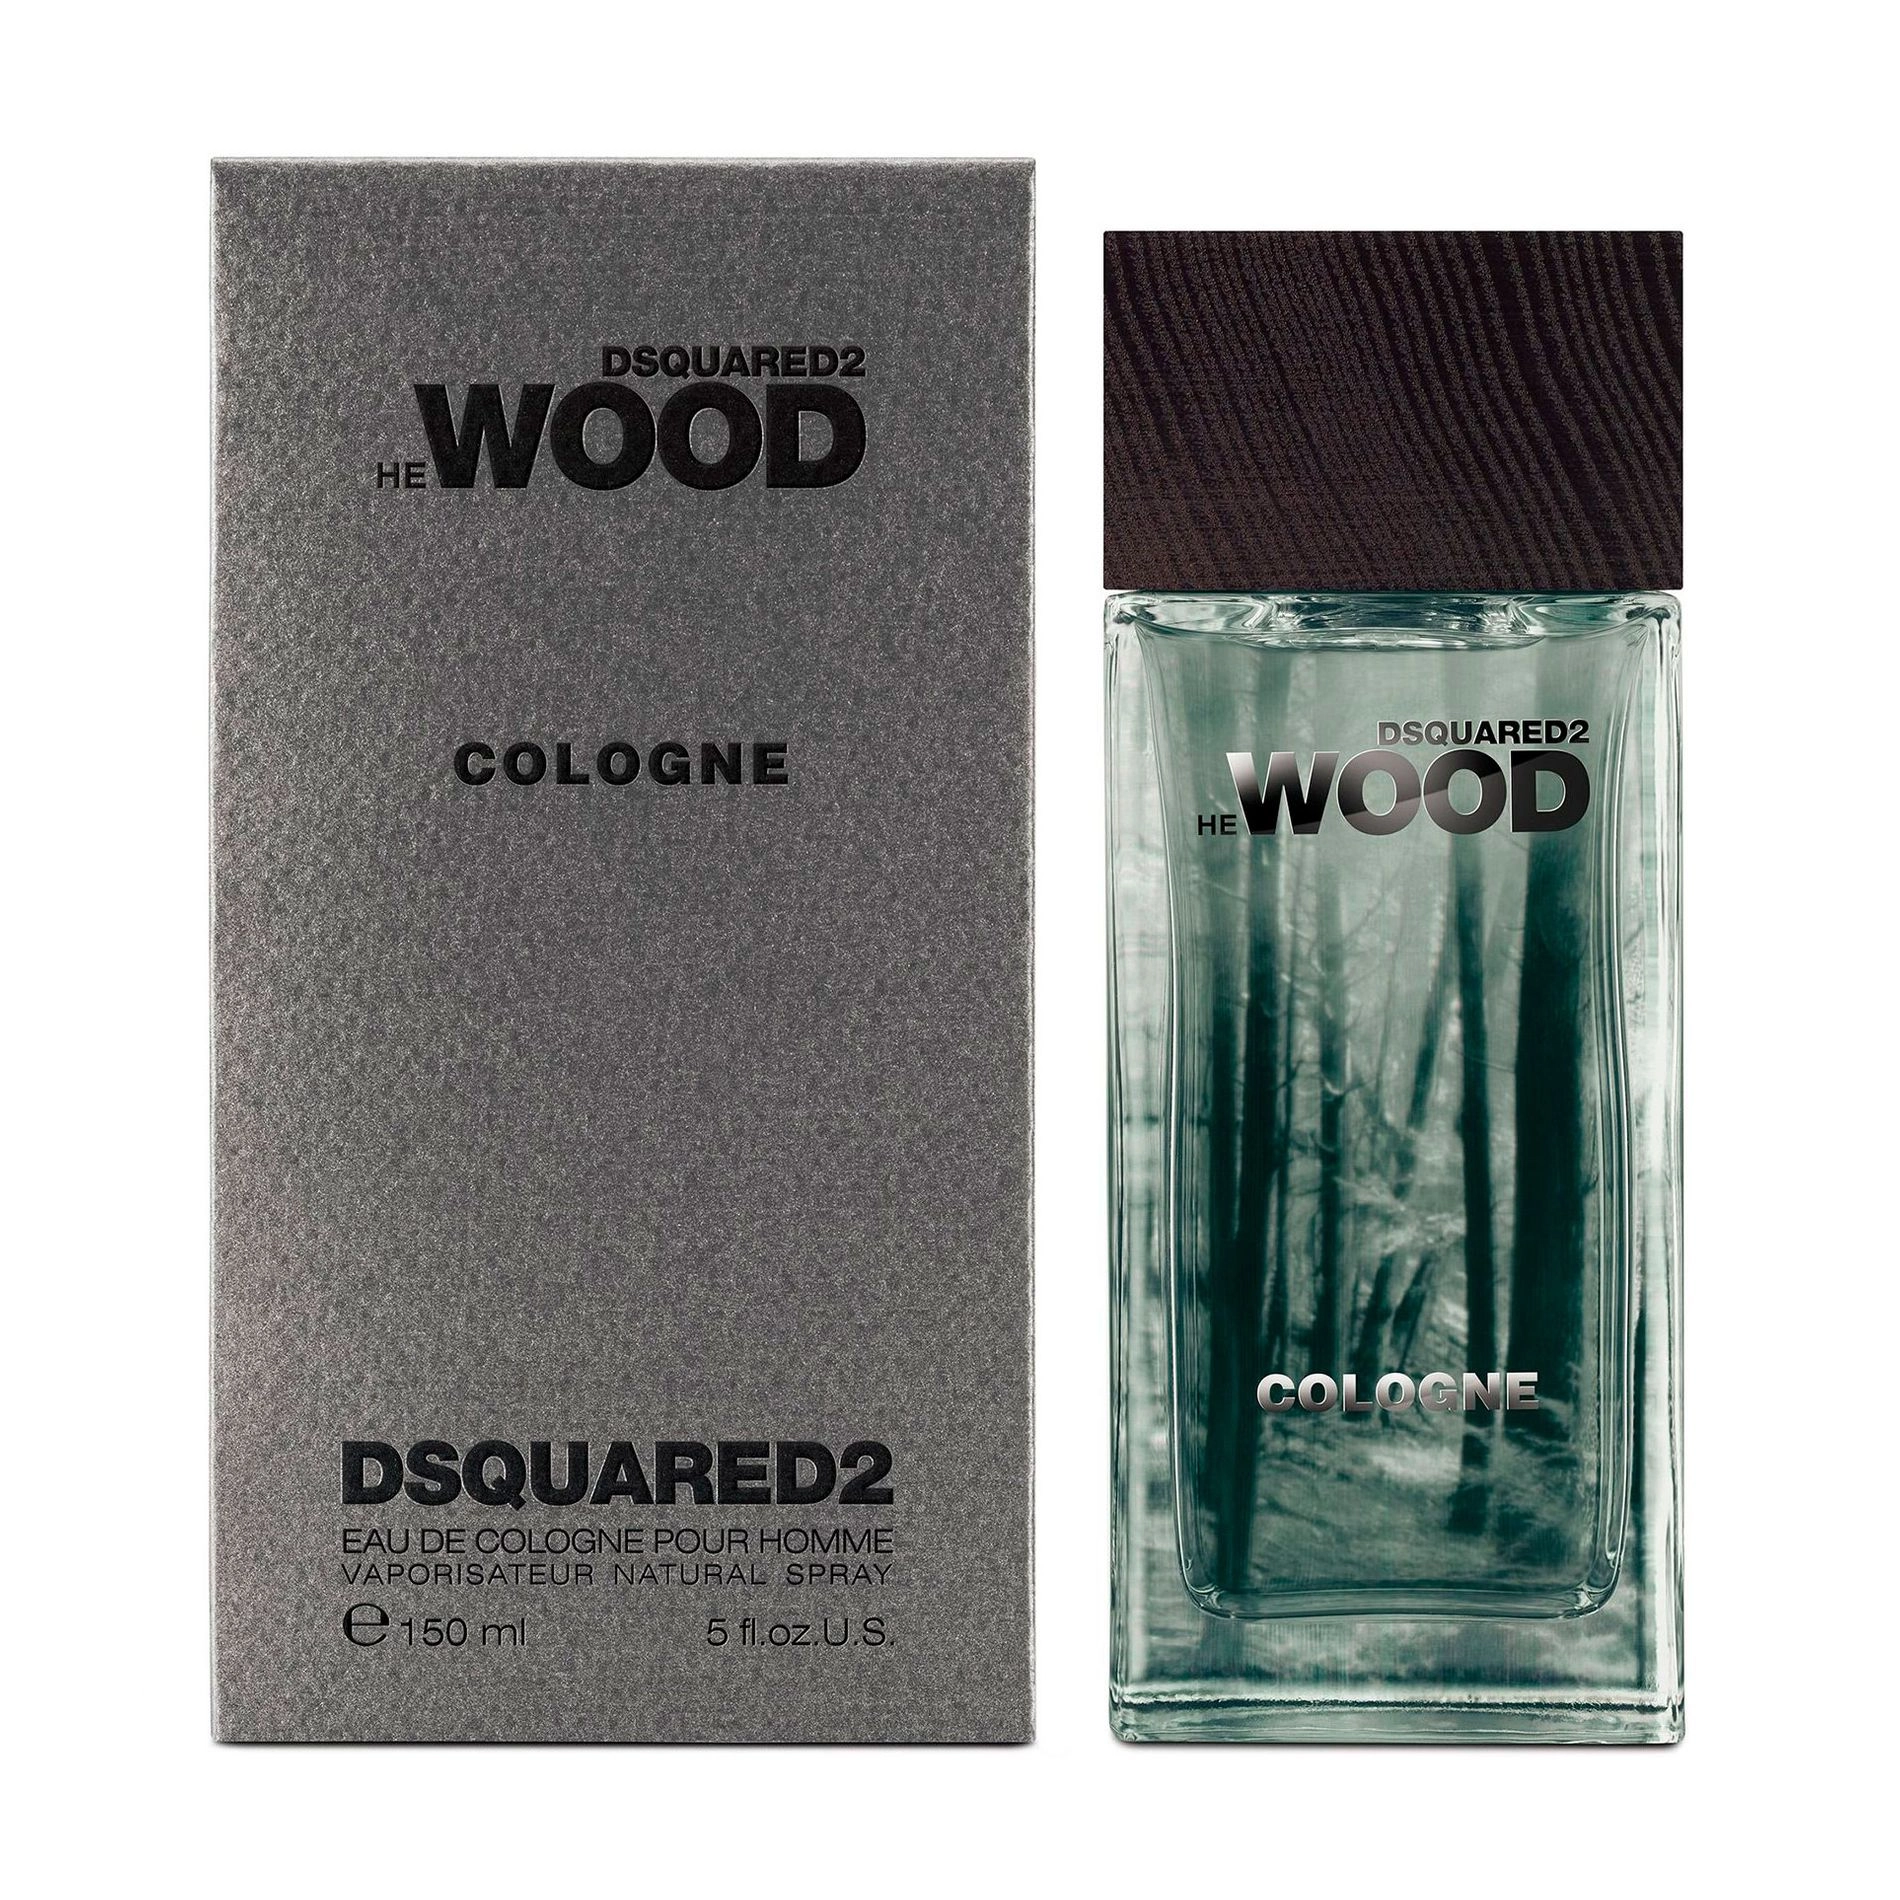 Dsquared2 He Wood Cologne Одеколон мужской, 150 мл - фото N1